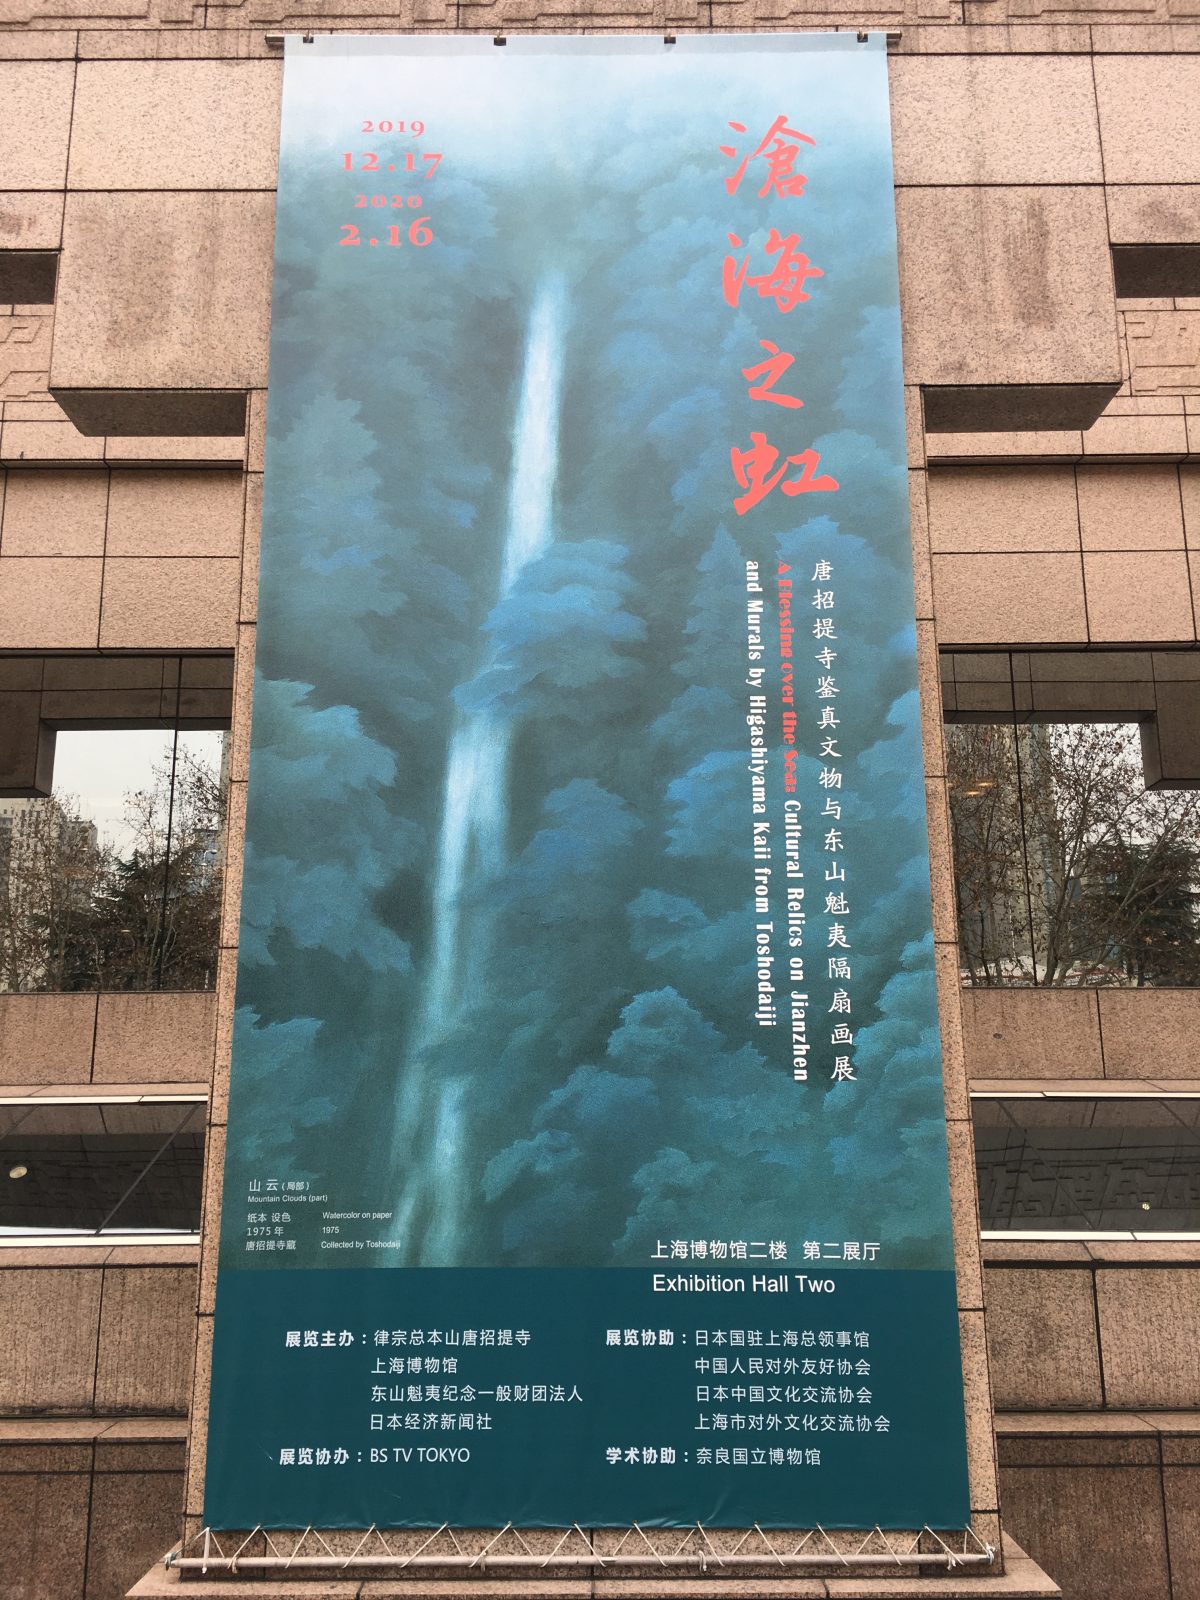 上海博物馆·沧海之虹·日本· 东山魁夷·唐招提寺隔扇画